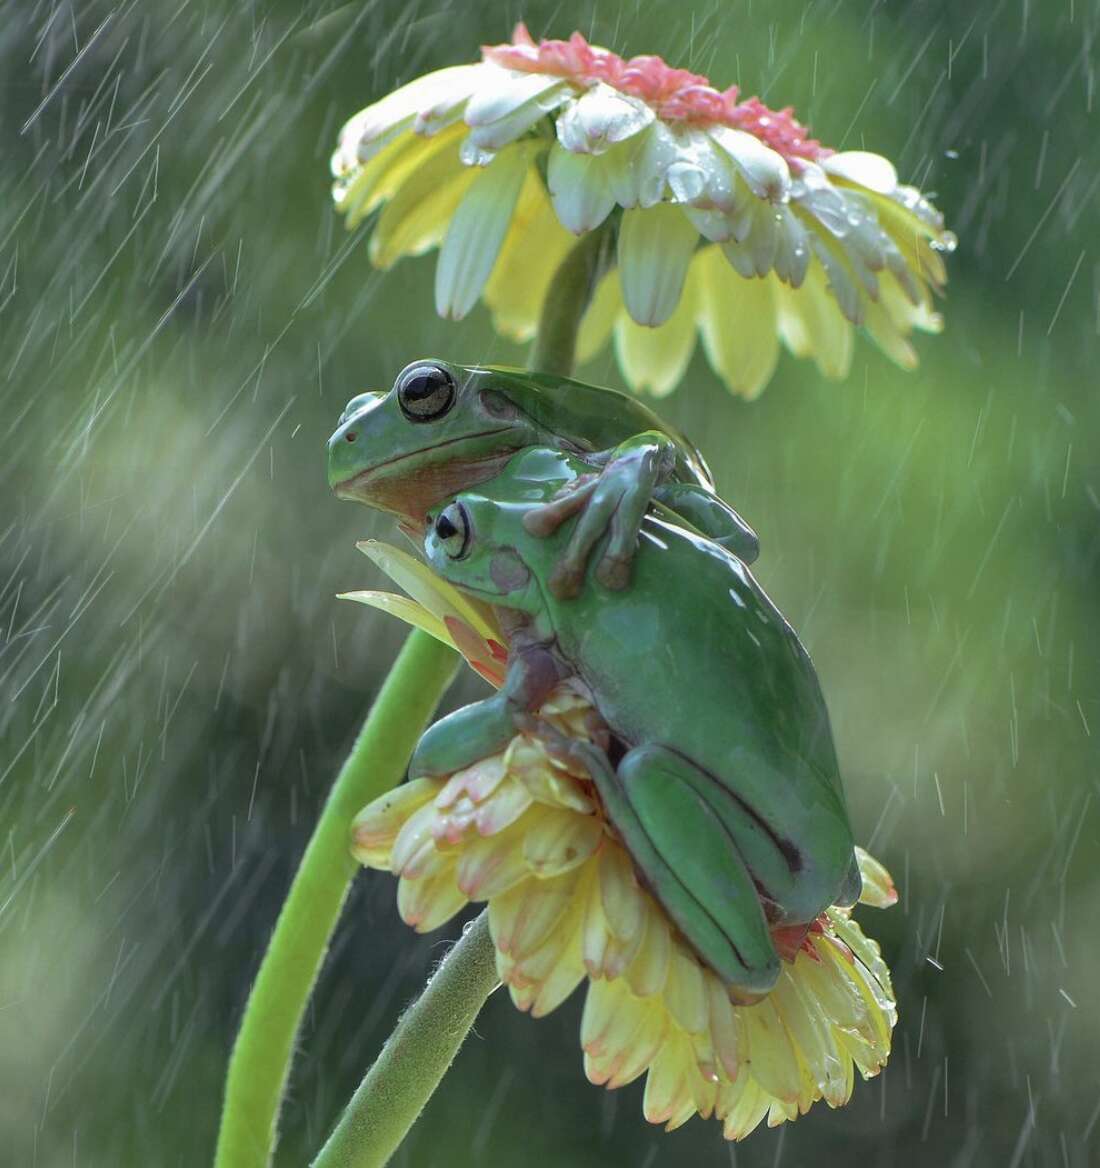 Frogs hug in the rain